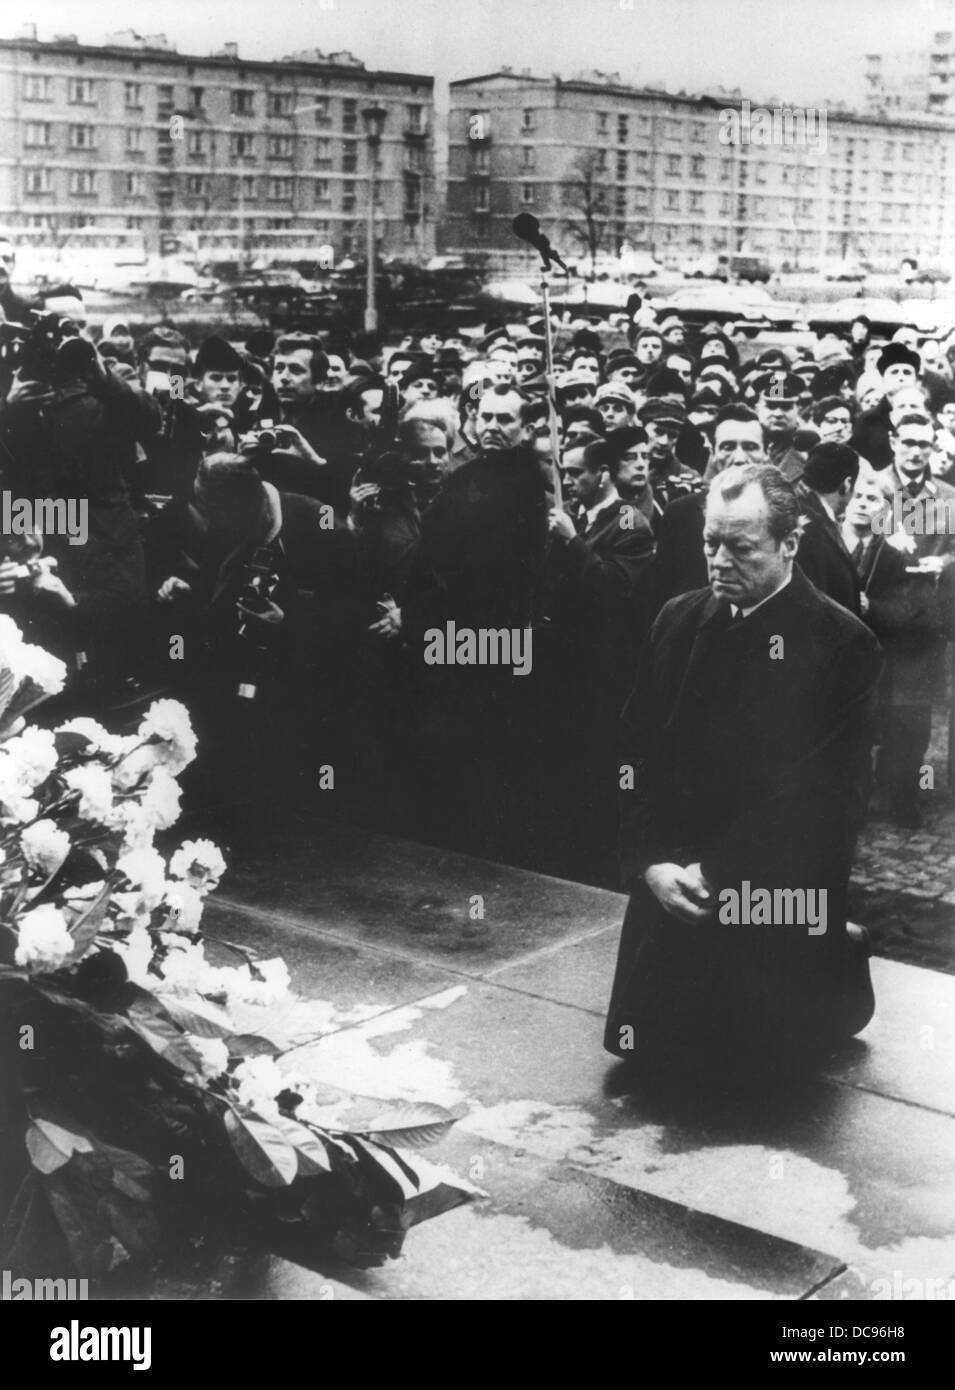 Historische Szene: Bundeskanzler Willy Brandt die Knie nach unten vor dem Denkmal, das die Helden des Aufstandes im April 1943, im ehemaligen jüdischen Ghetto von Warschau am 7. Dezember 1970 gewidmet ist. Stockfoto